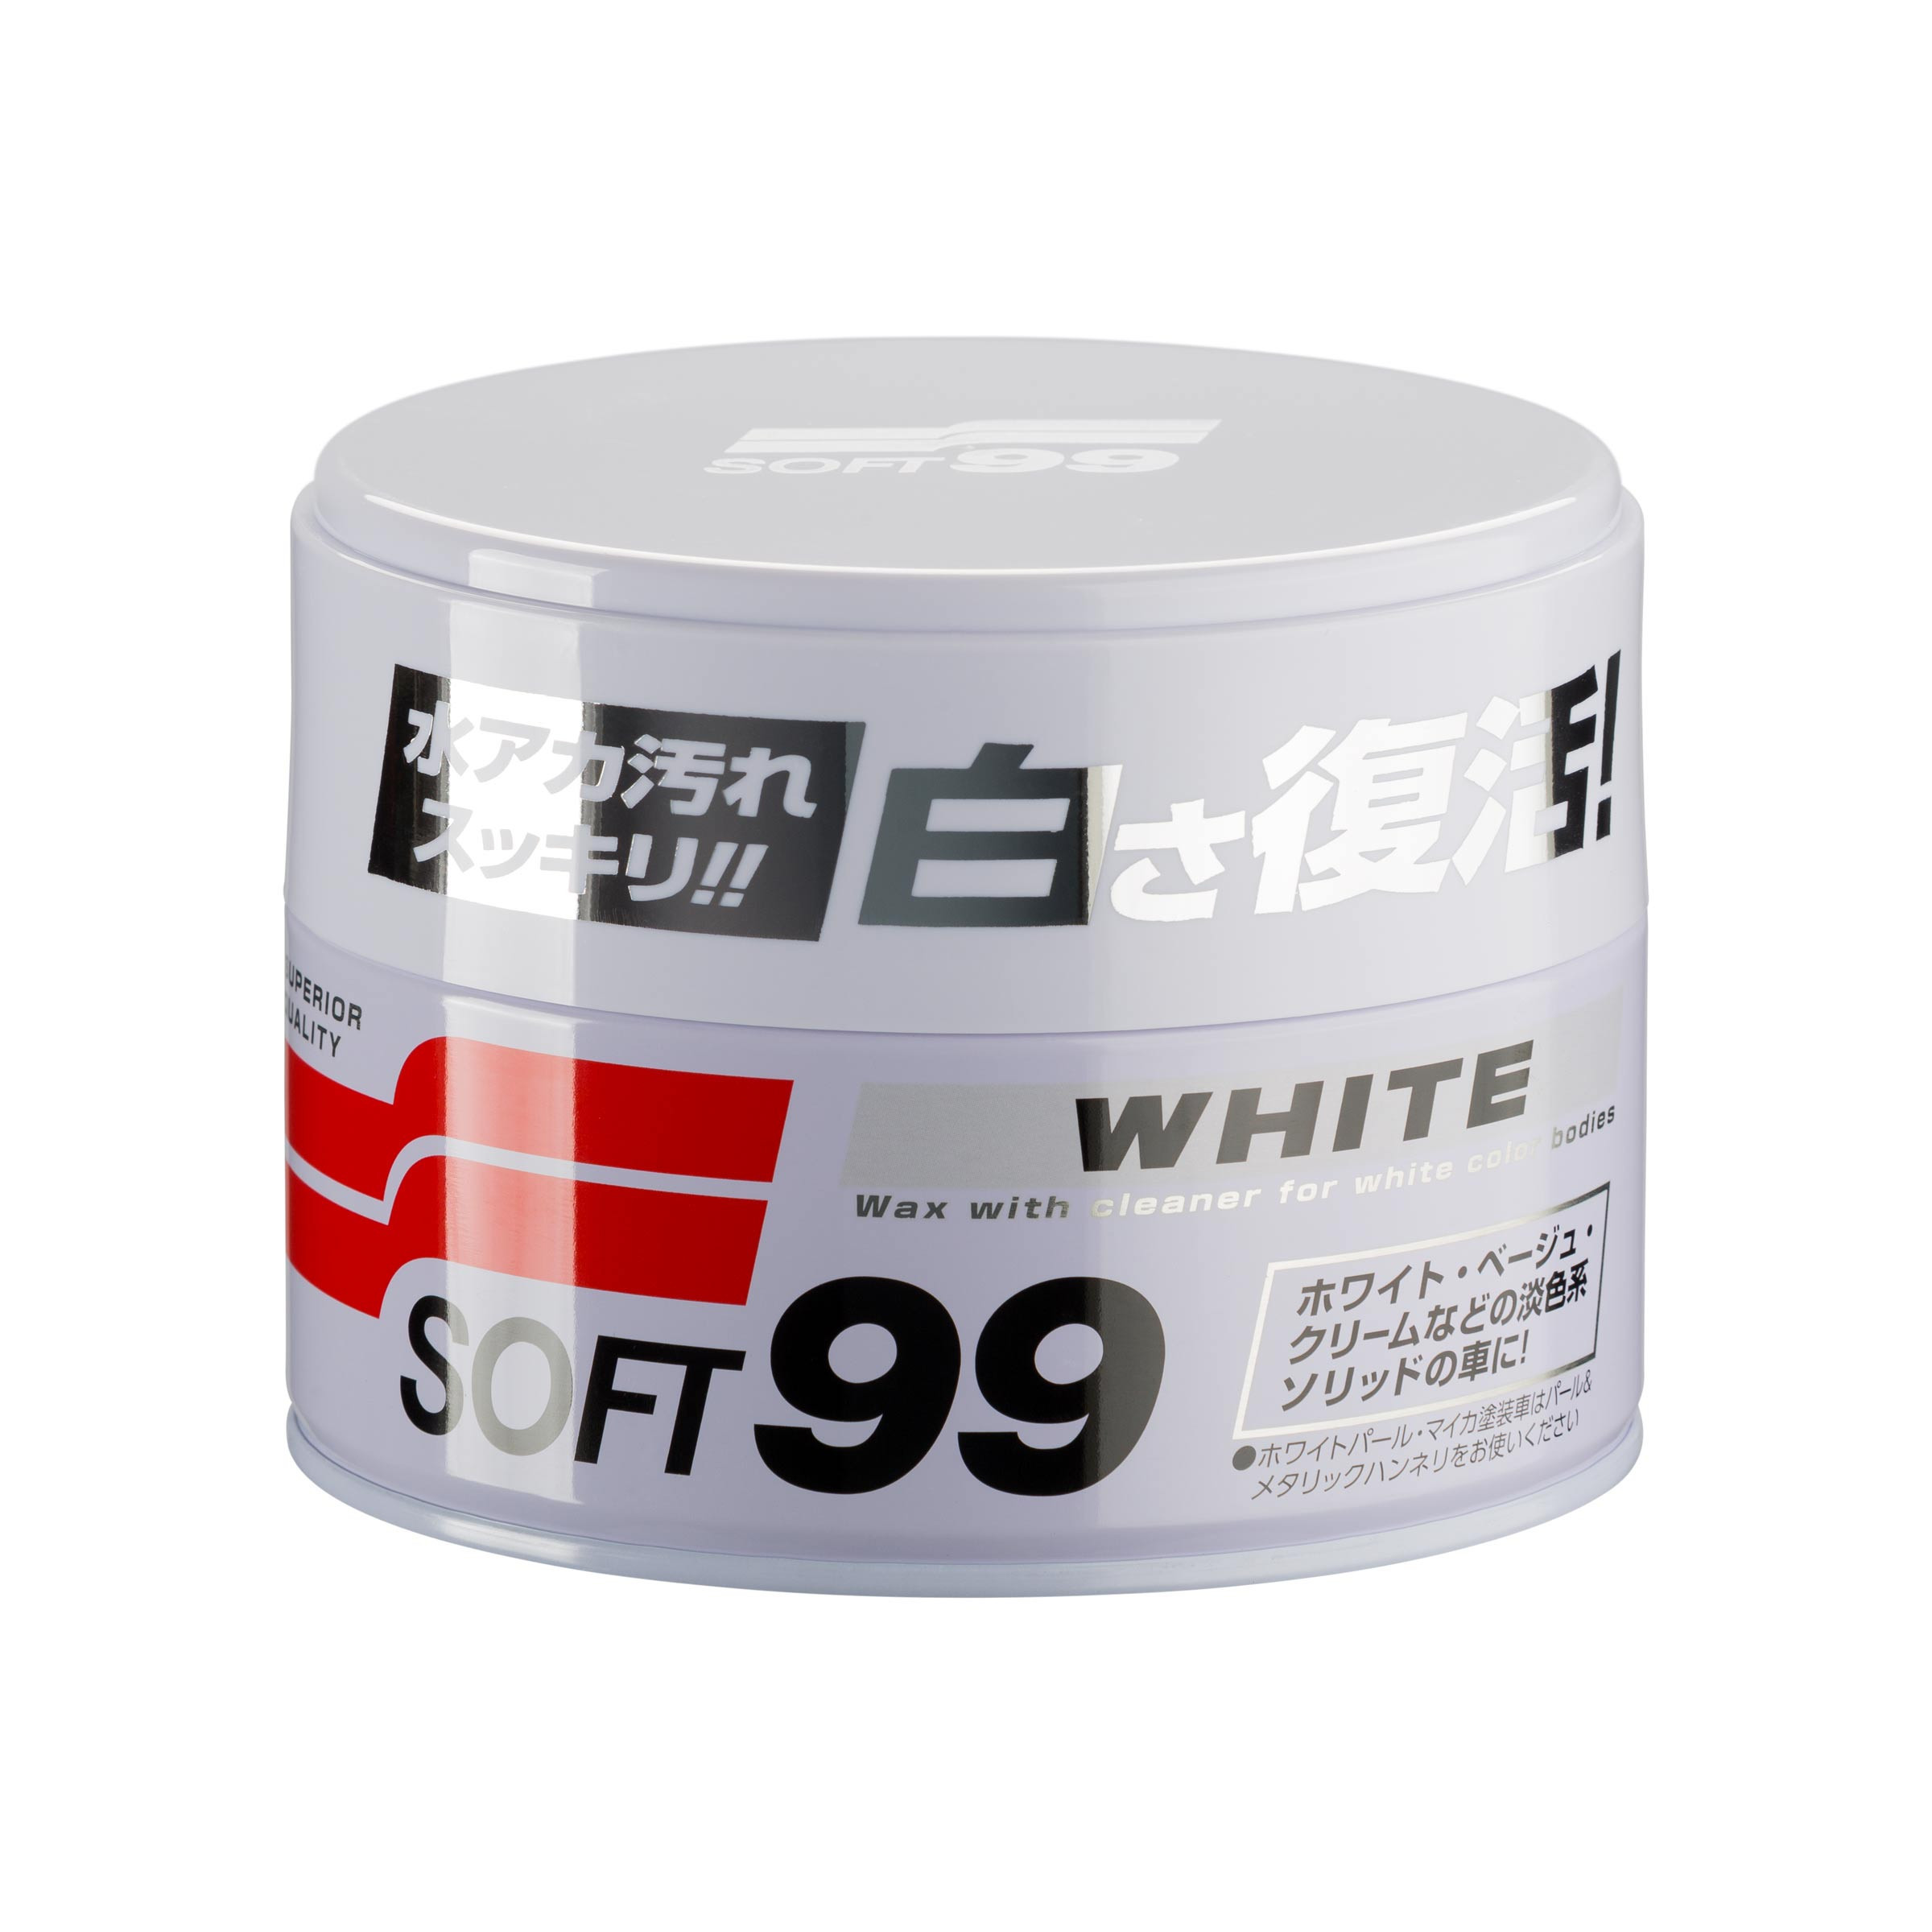 White Soft99 Wax, miękki wosk samochodowy, 350 g